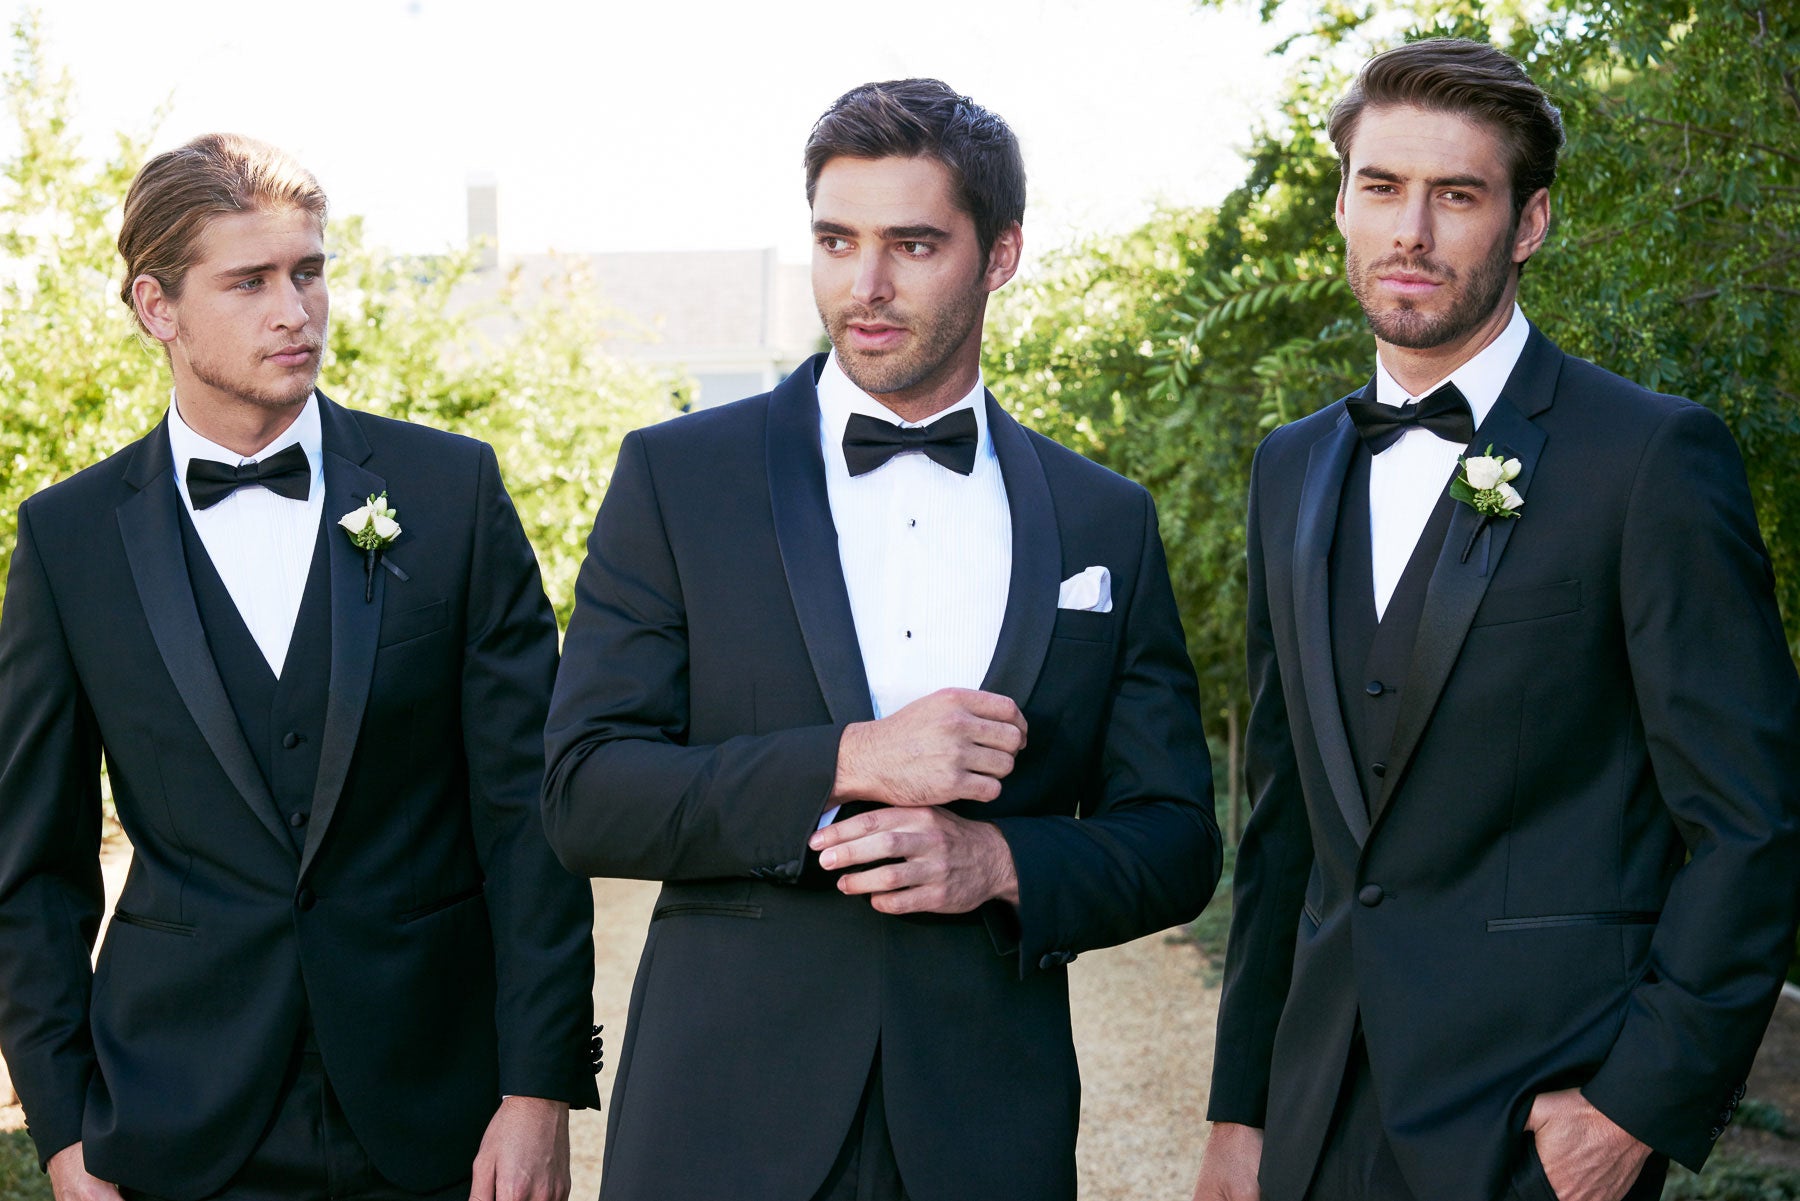 Wedding Guest Suit Outfit For Men – StudioSuits